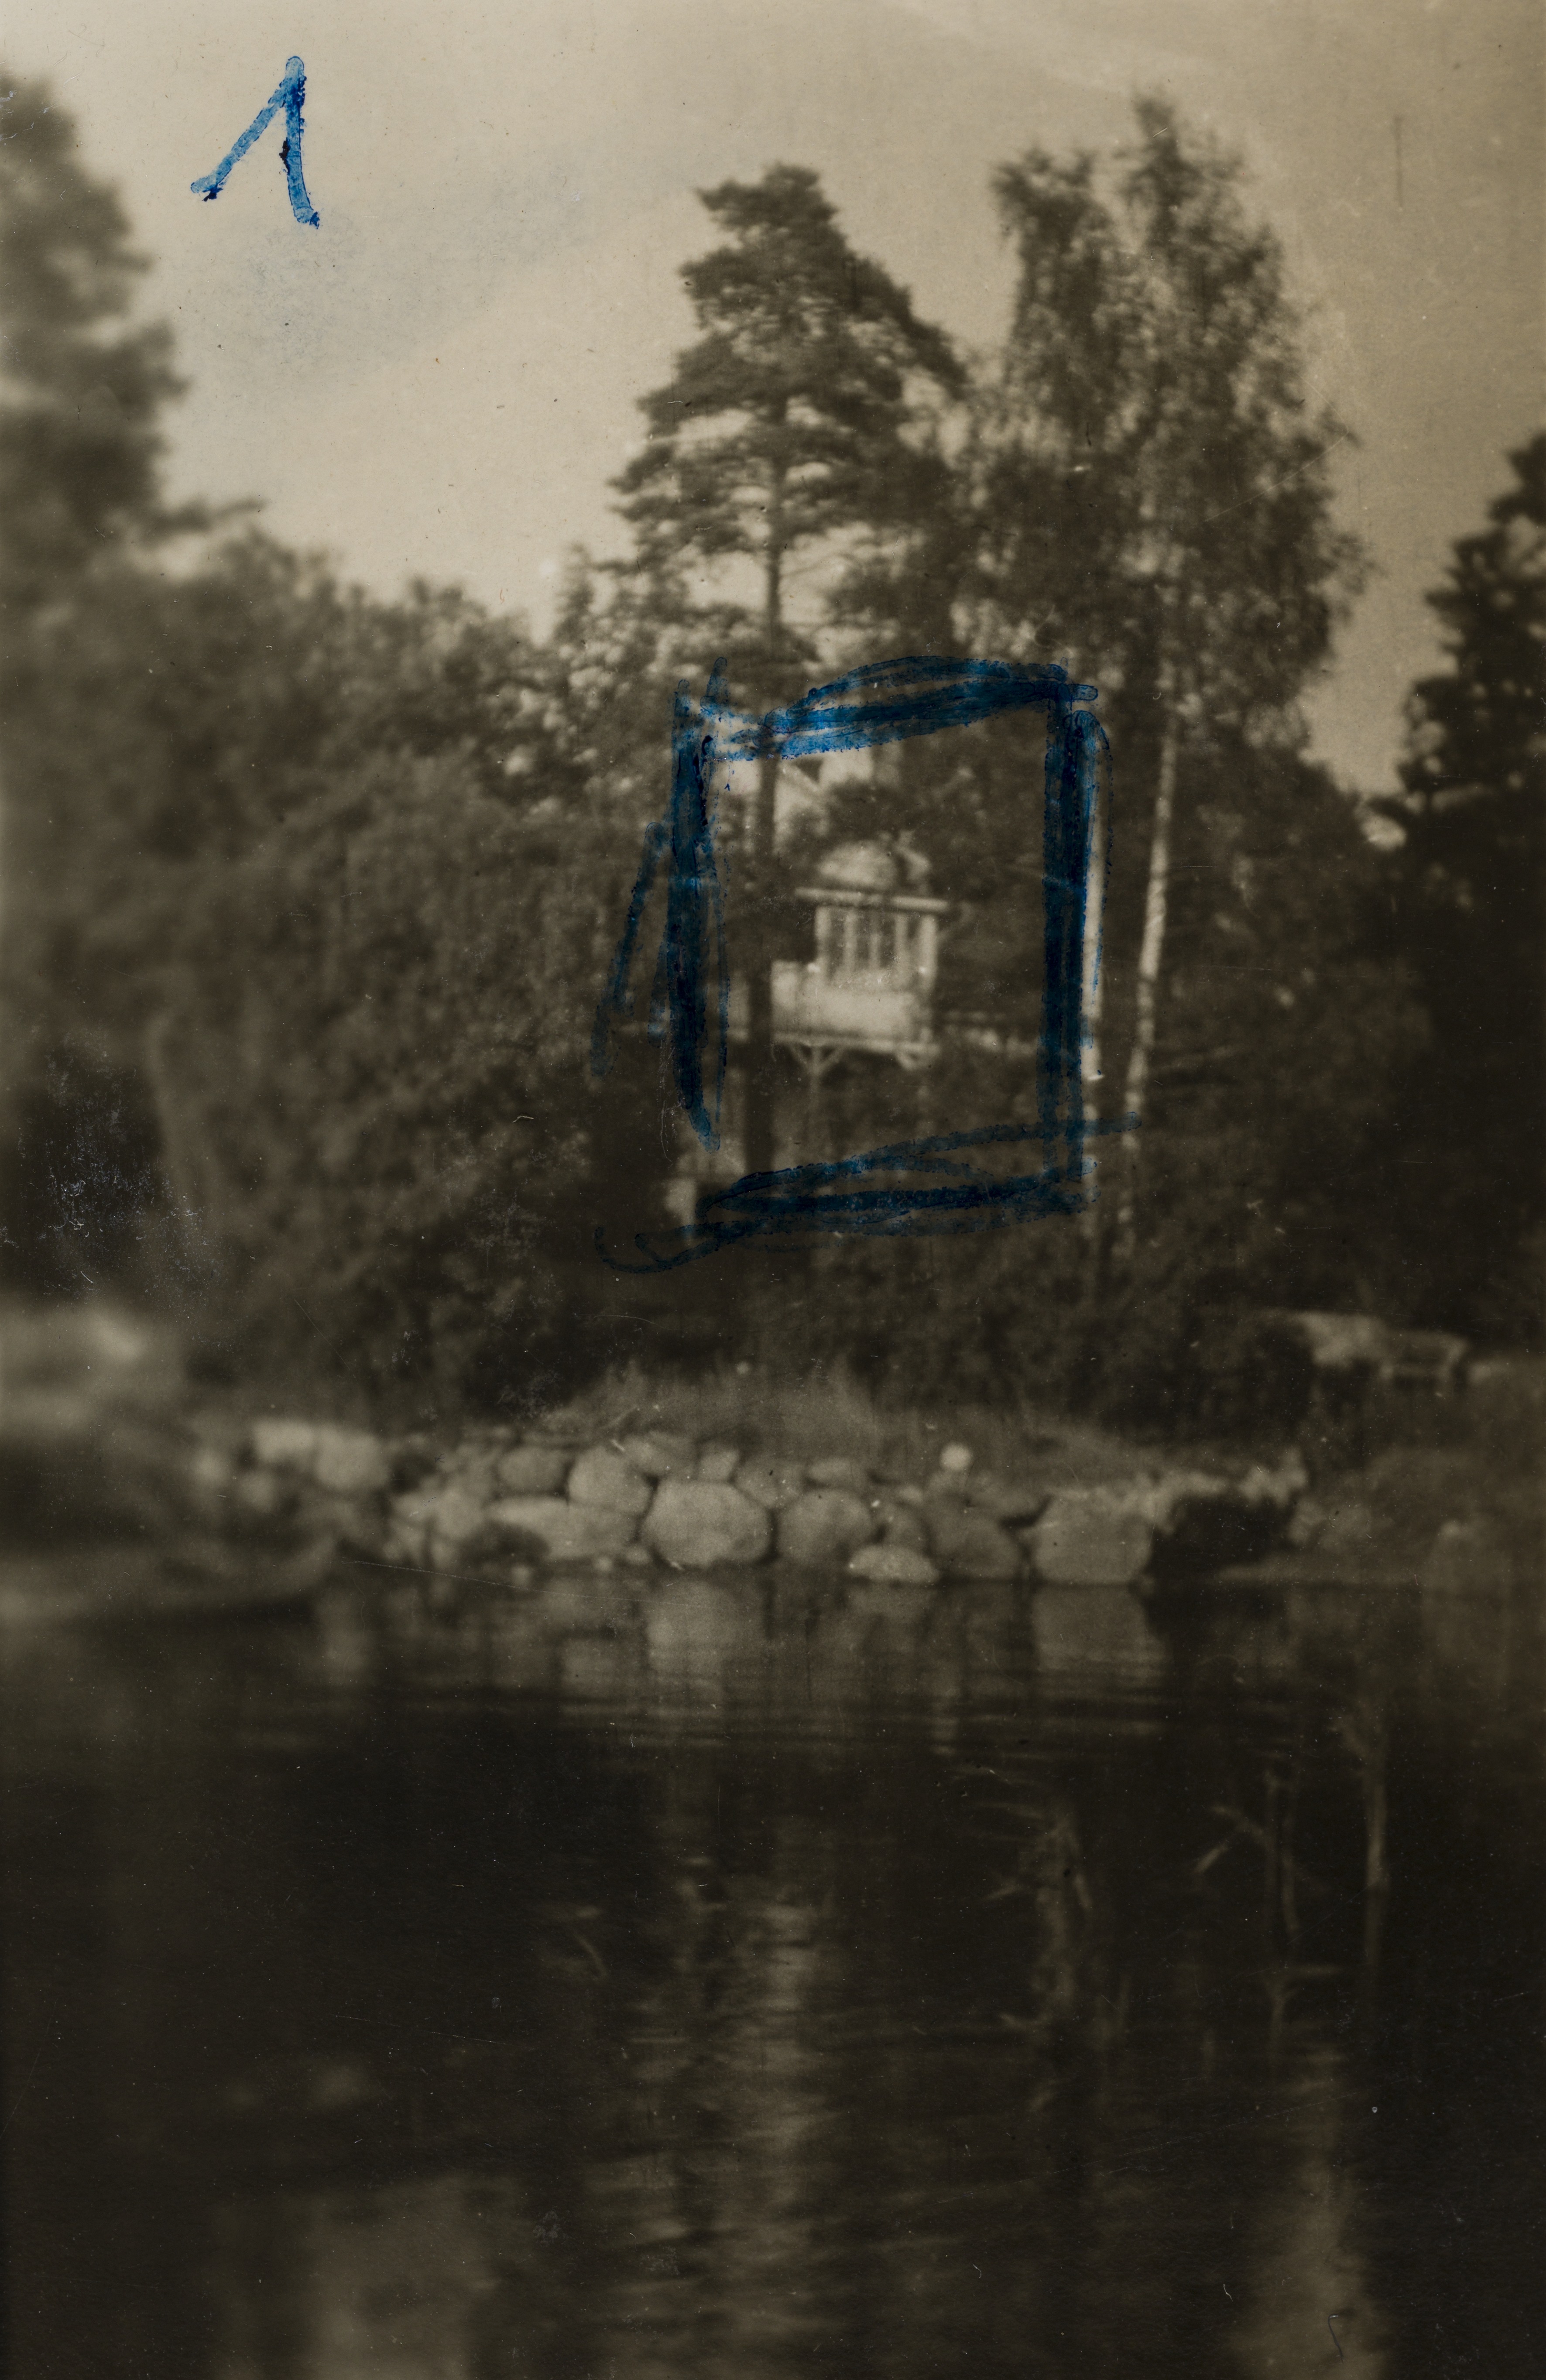 Villa Miramar kuvattuna rannan suunnasta. 1800-luvun lopulla rakennettu Miramar oli osa Töölön huvila-aluetta. Huvila sijaitsi nykyisessä Sibeliuksen puistossa lähellä paikkaa, jonne myöhemmin rakennettiin Sibelius-monumentti. Kuvassa näkyy luonnonkivistä rakennettu noin metrin veden yläpuolelle kohoava rantamuuri. Huvila paloi pahasti tuhopoltossa joulukuussa 1942.